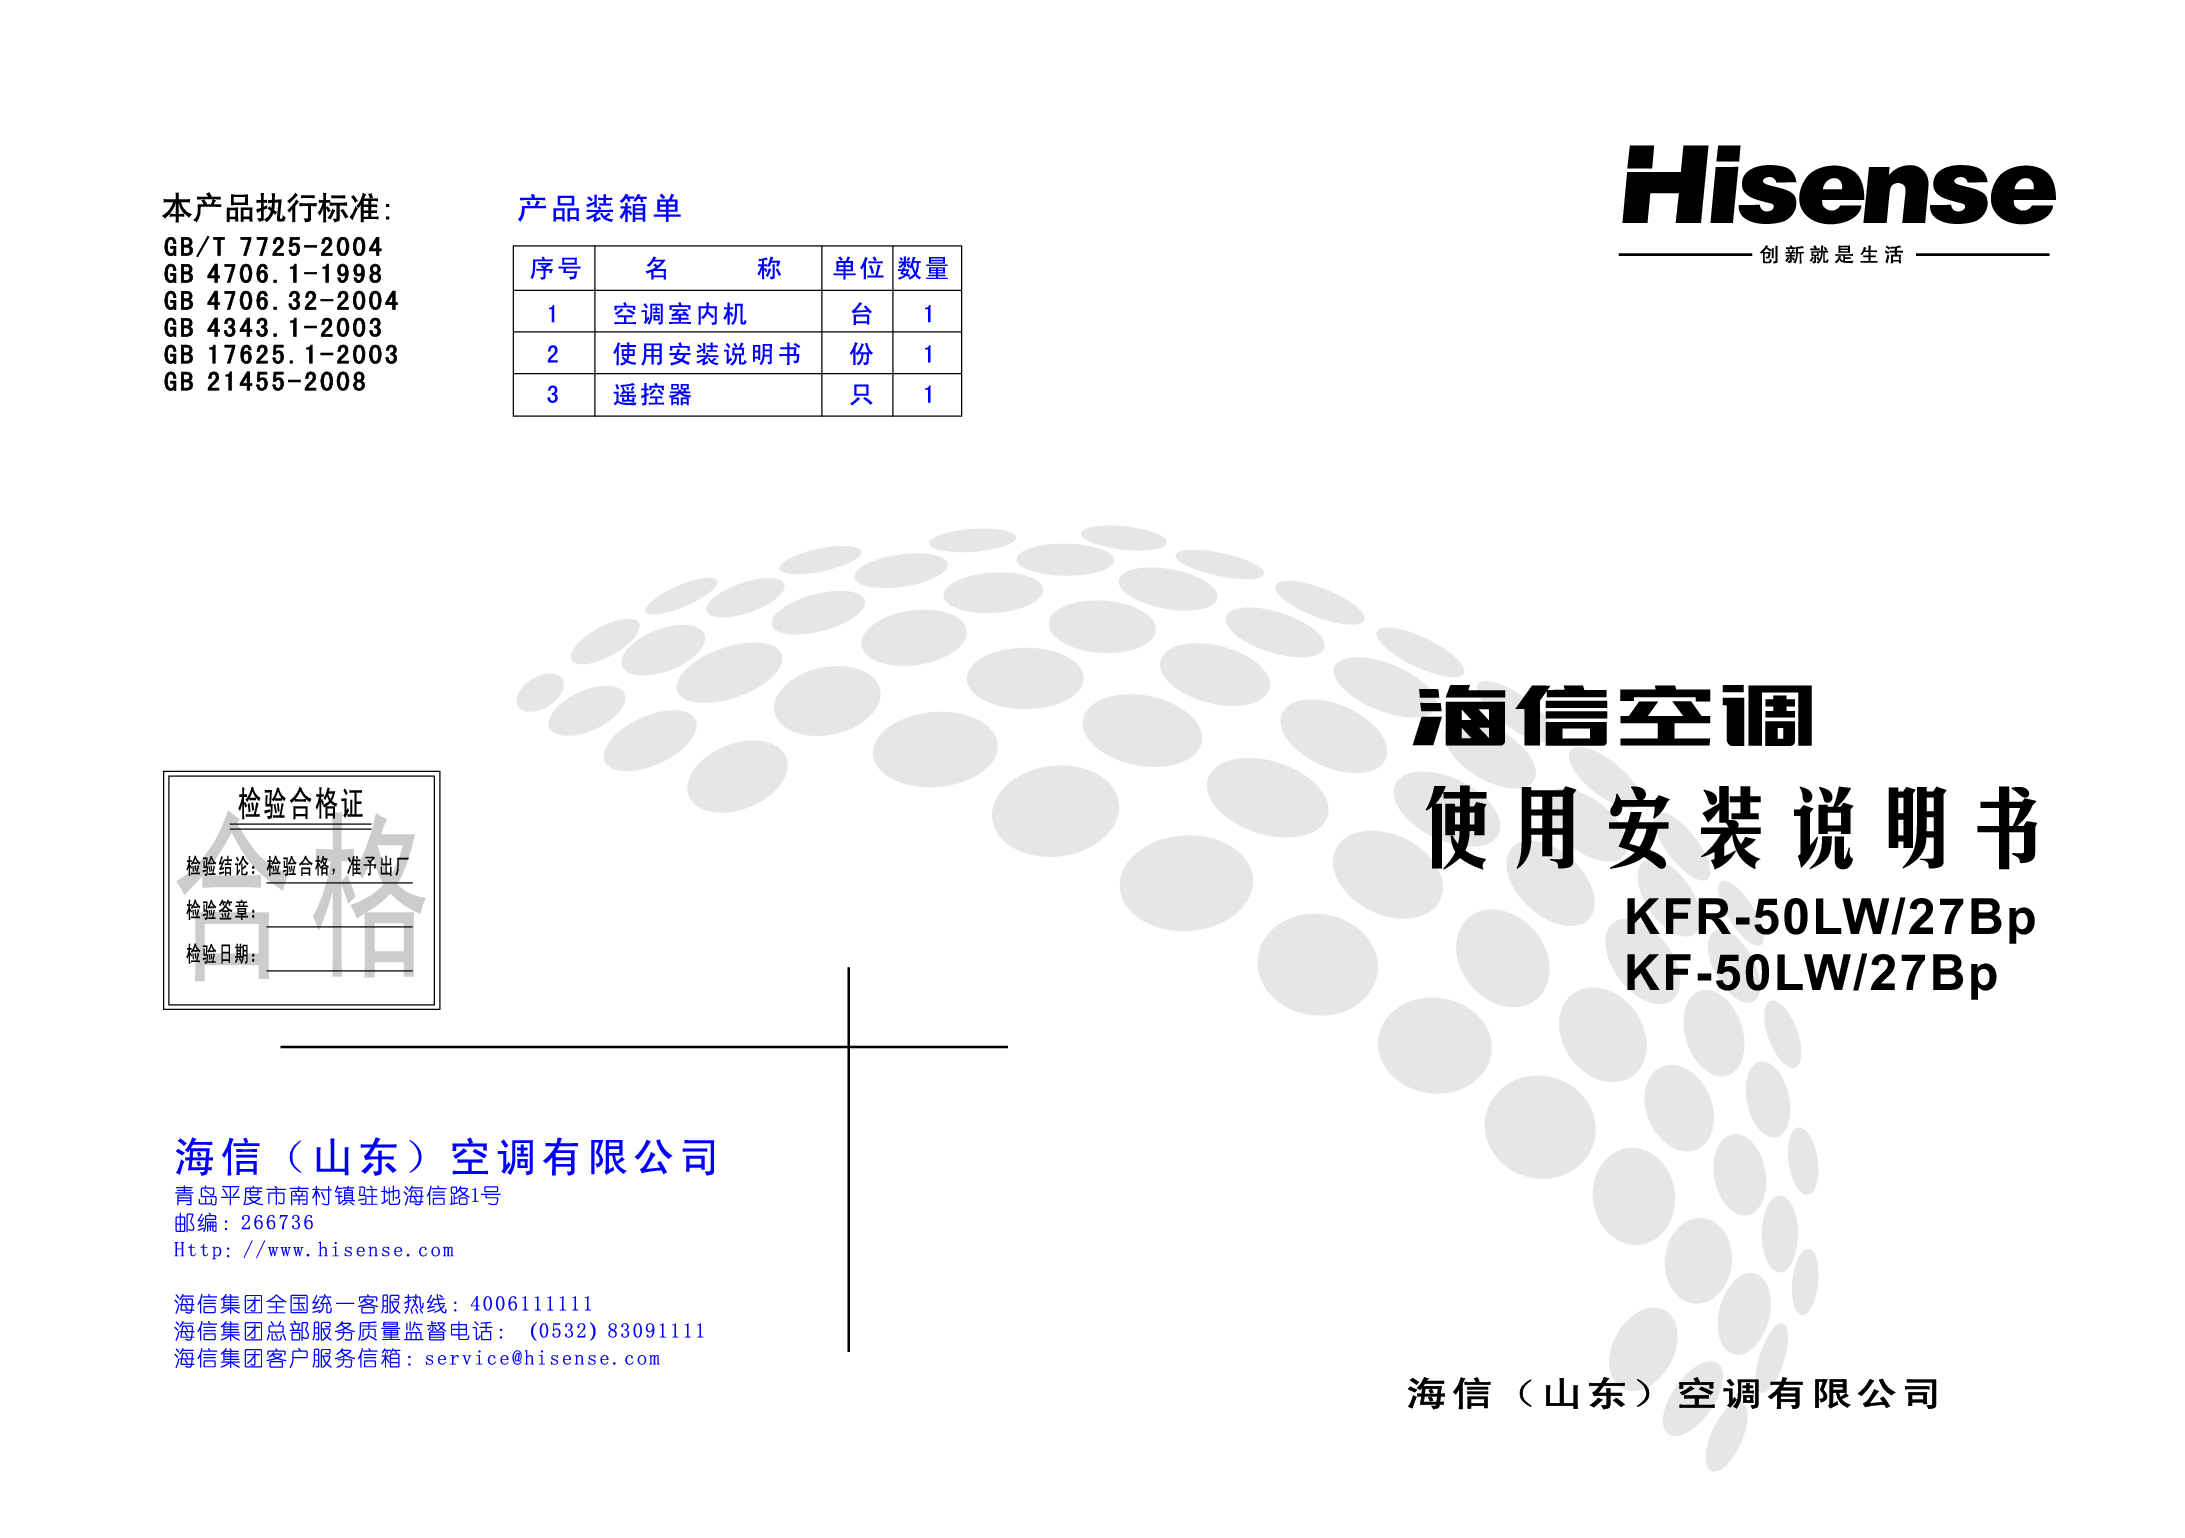 海信 Hisense KF-50LW/27Bp 使用说明书 封面